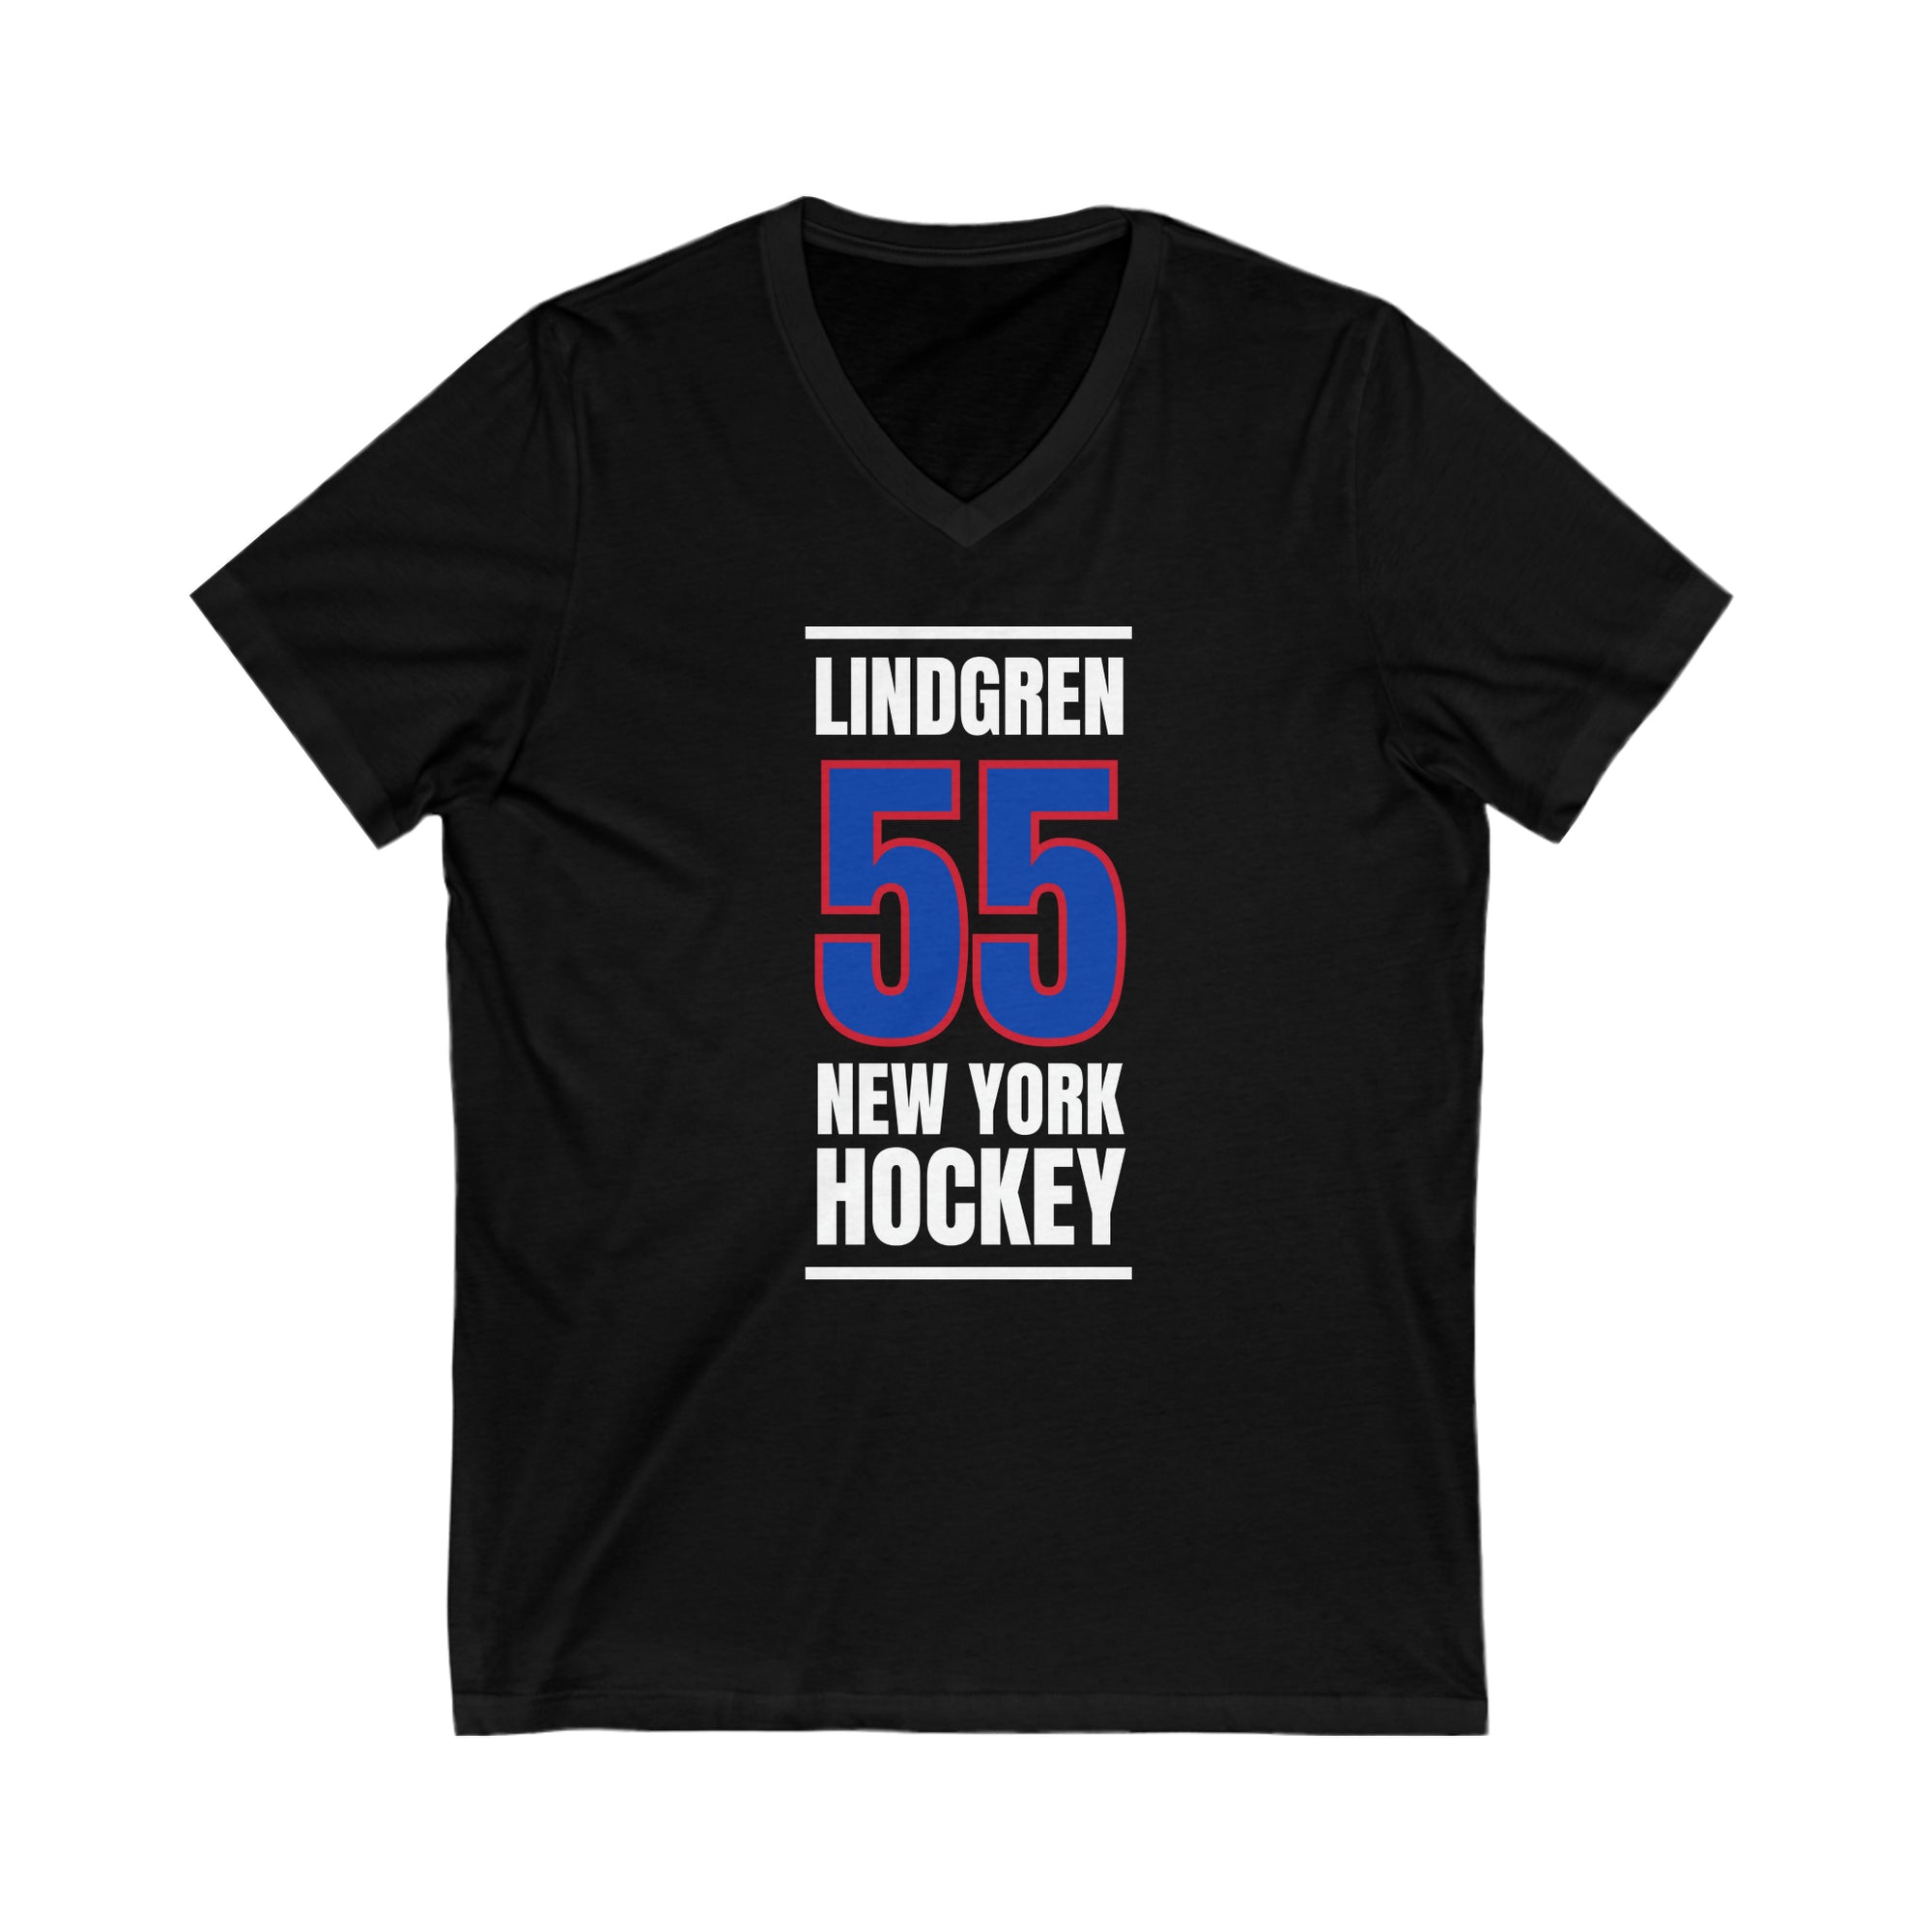 Lindgren 55 New York Hockey Royal Blue Vertical Design Unisex V-Neck Tee